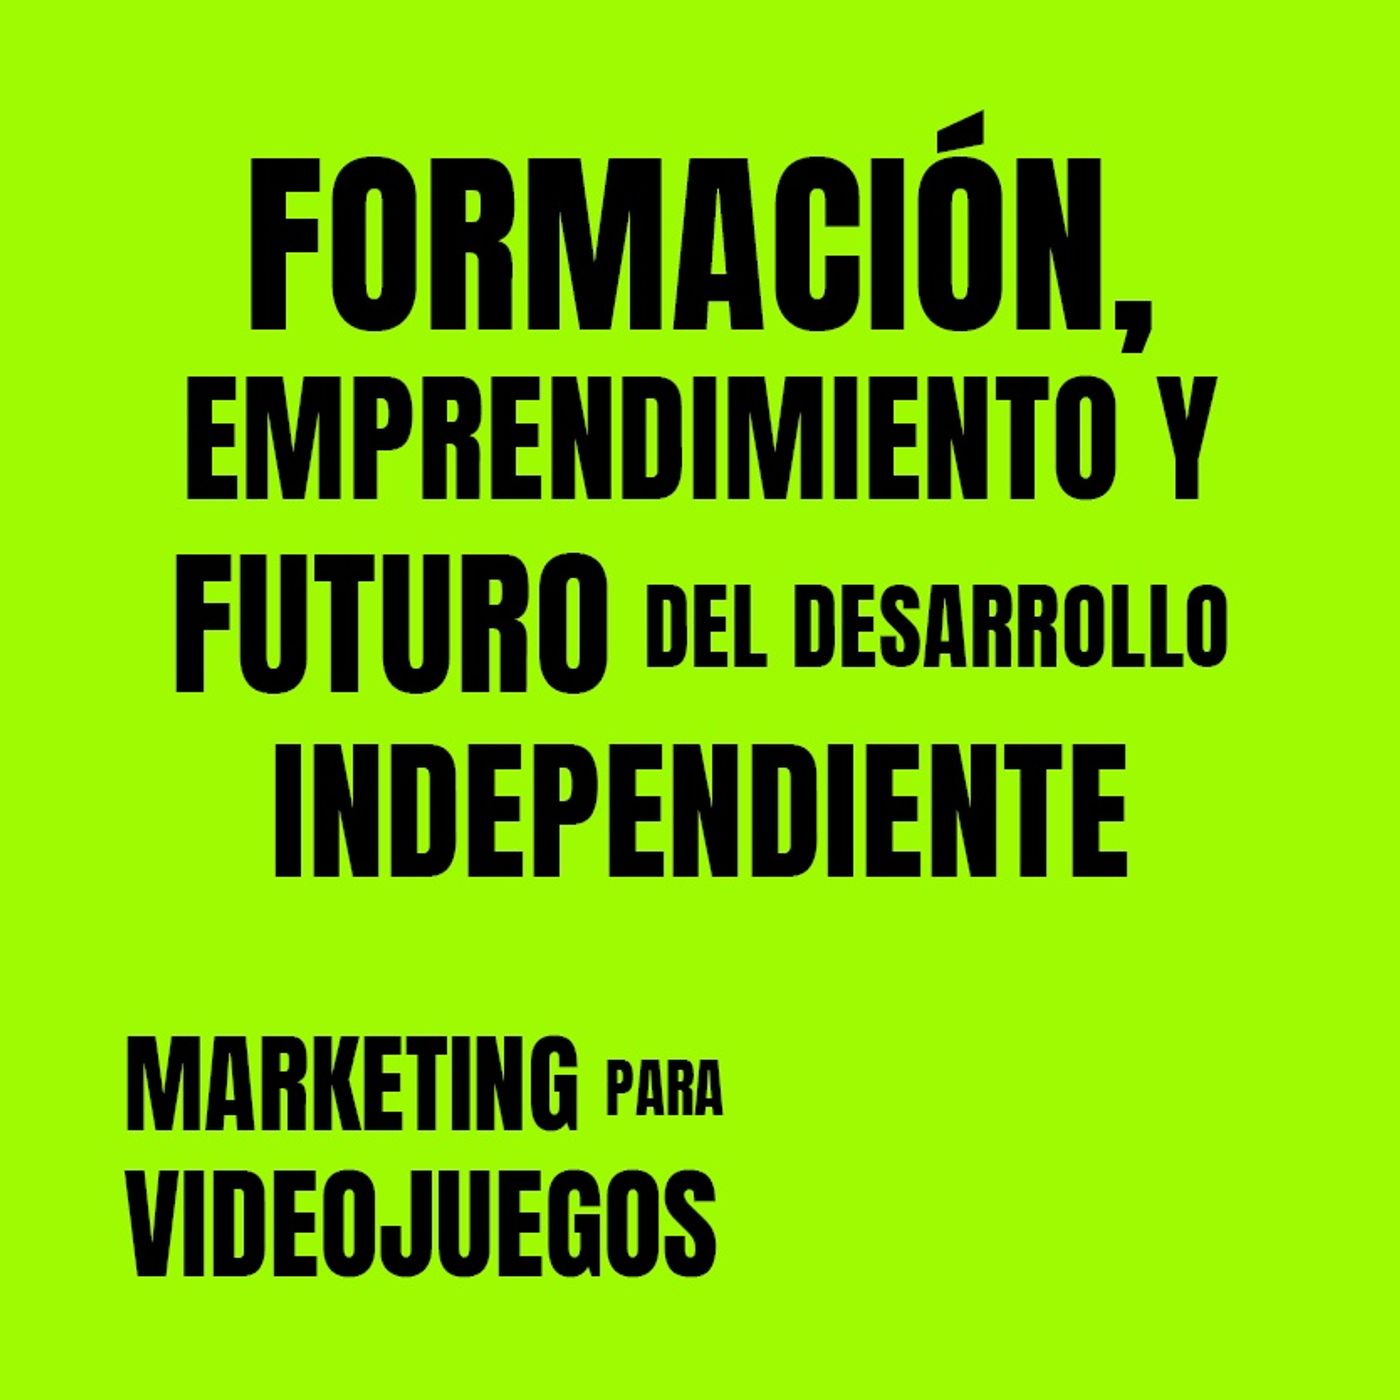 Marketing para Videojuegos 07-Formación,Emprendimiento,Futuro Des. Ind. [Daniel González |Flas Marketing| Gametopia]